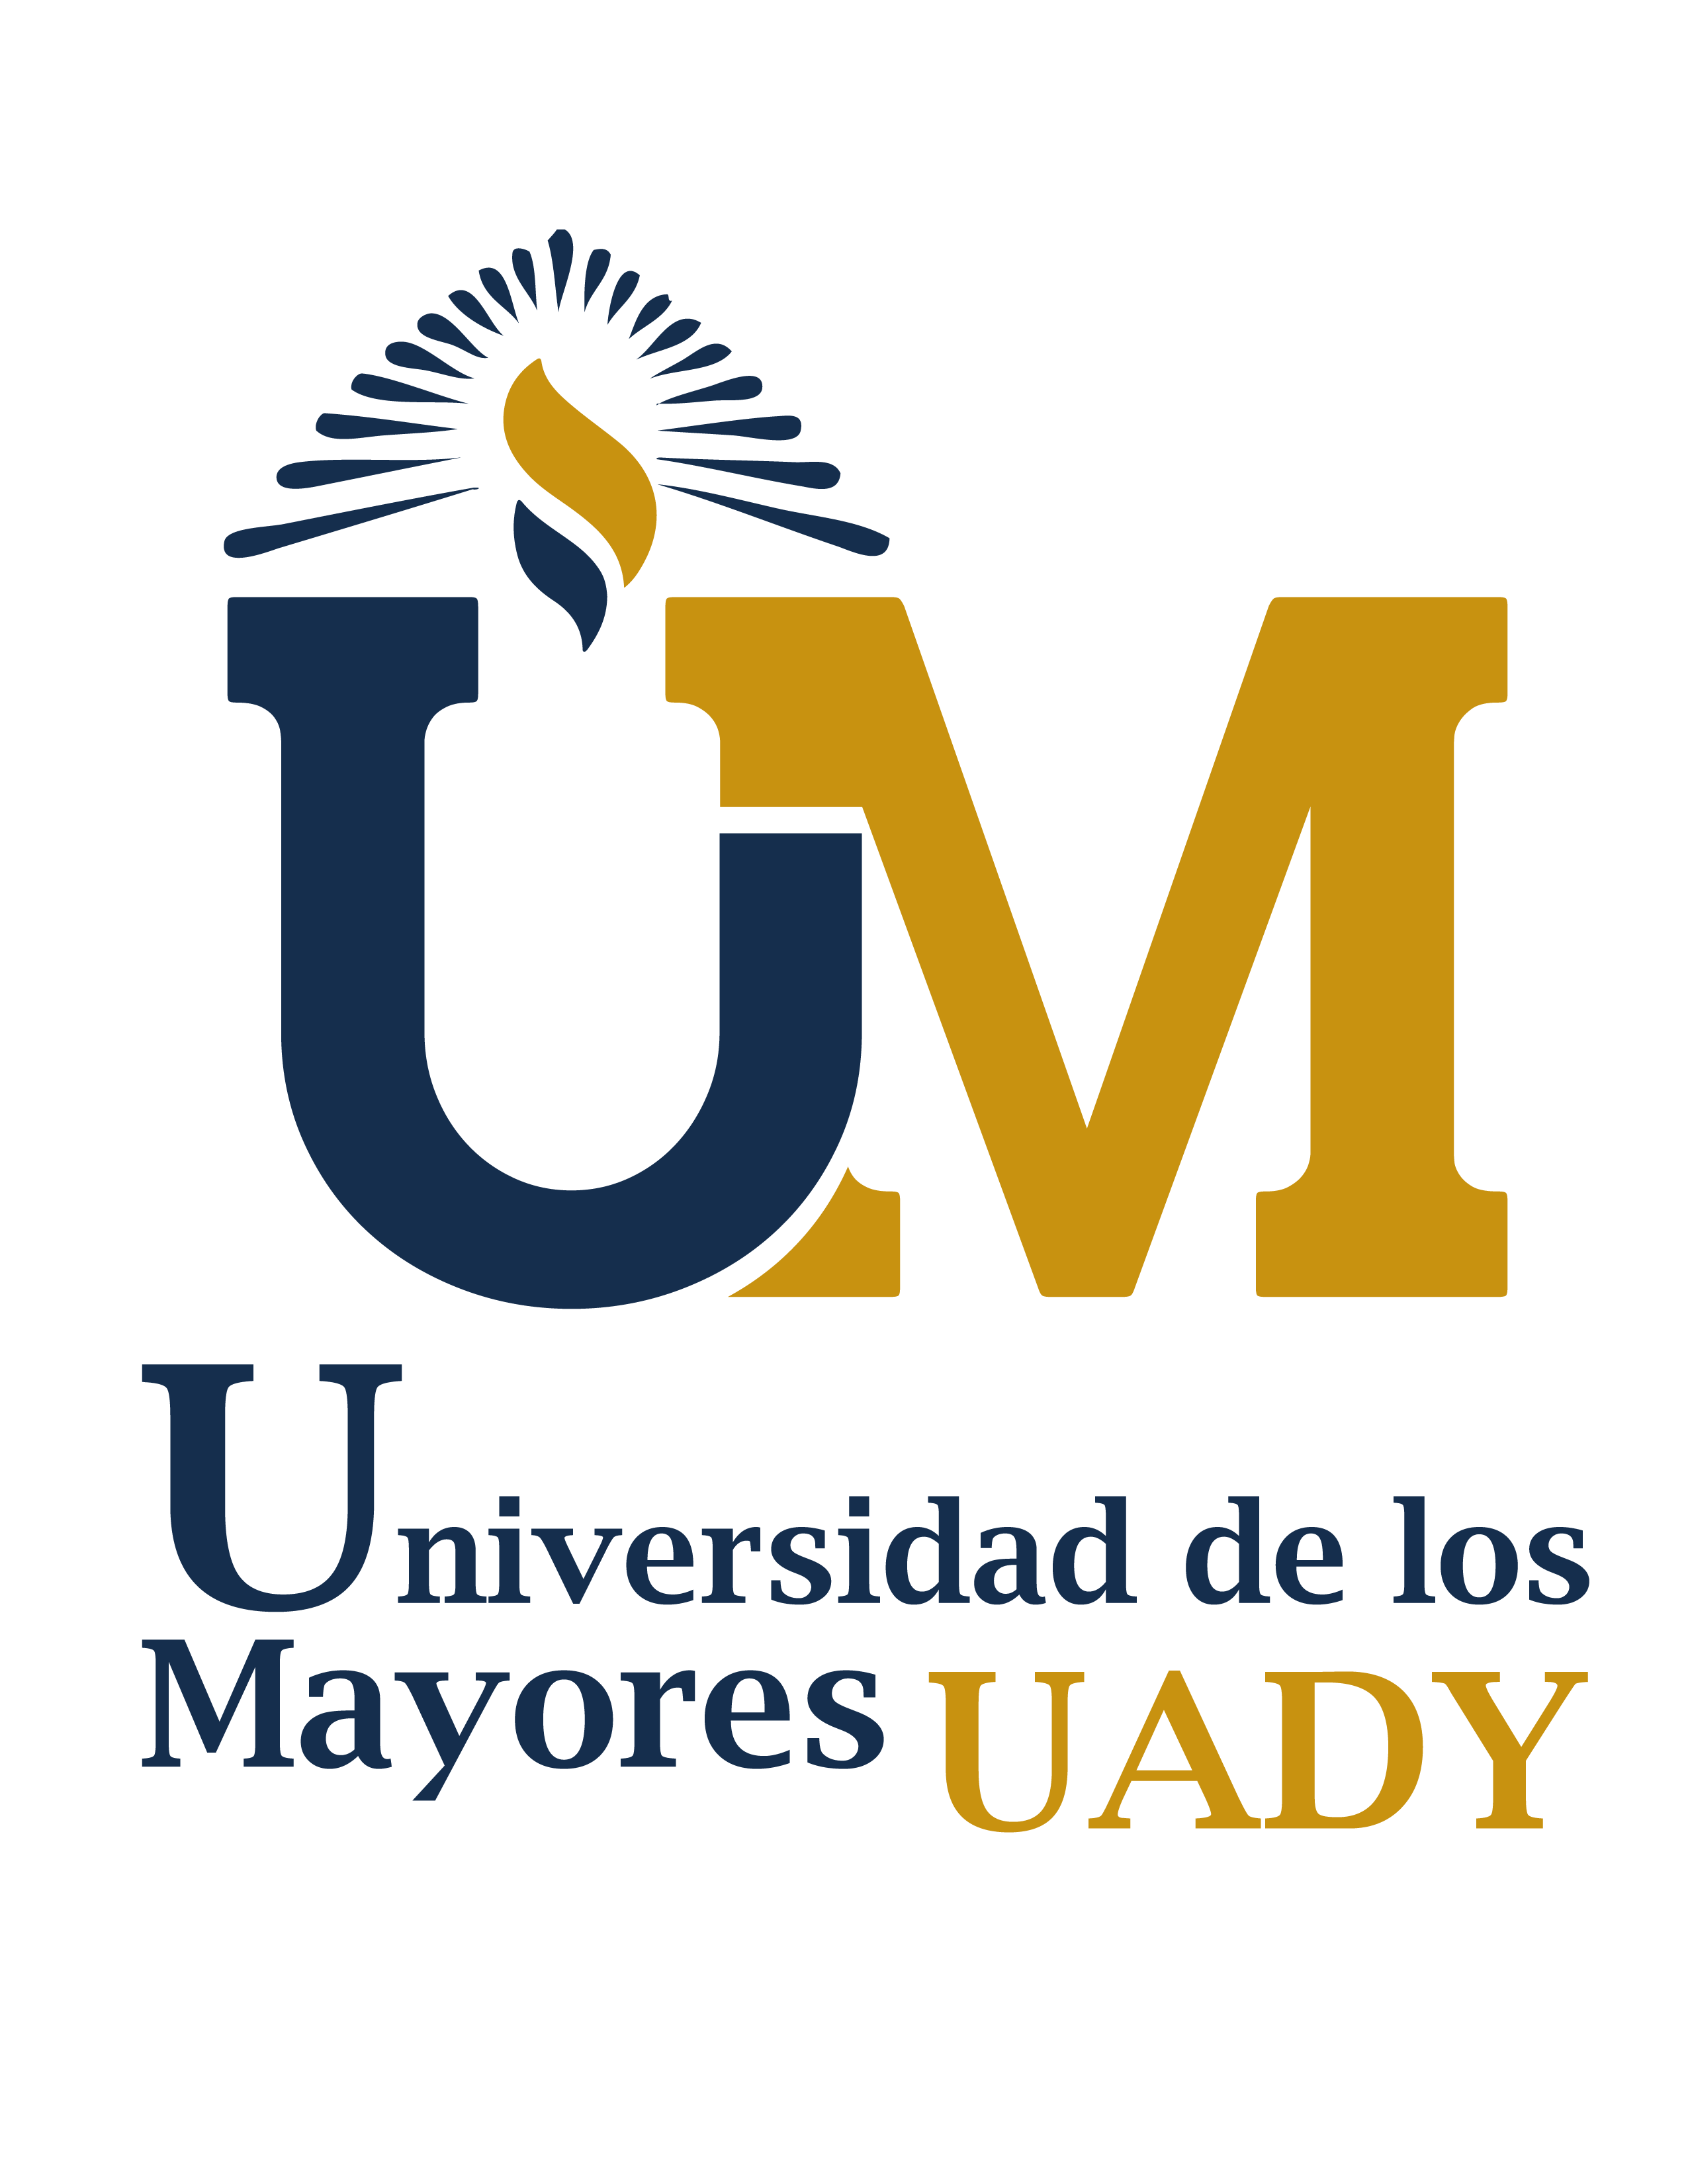 Universidad de los Mayores